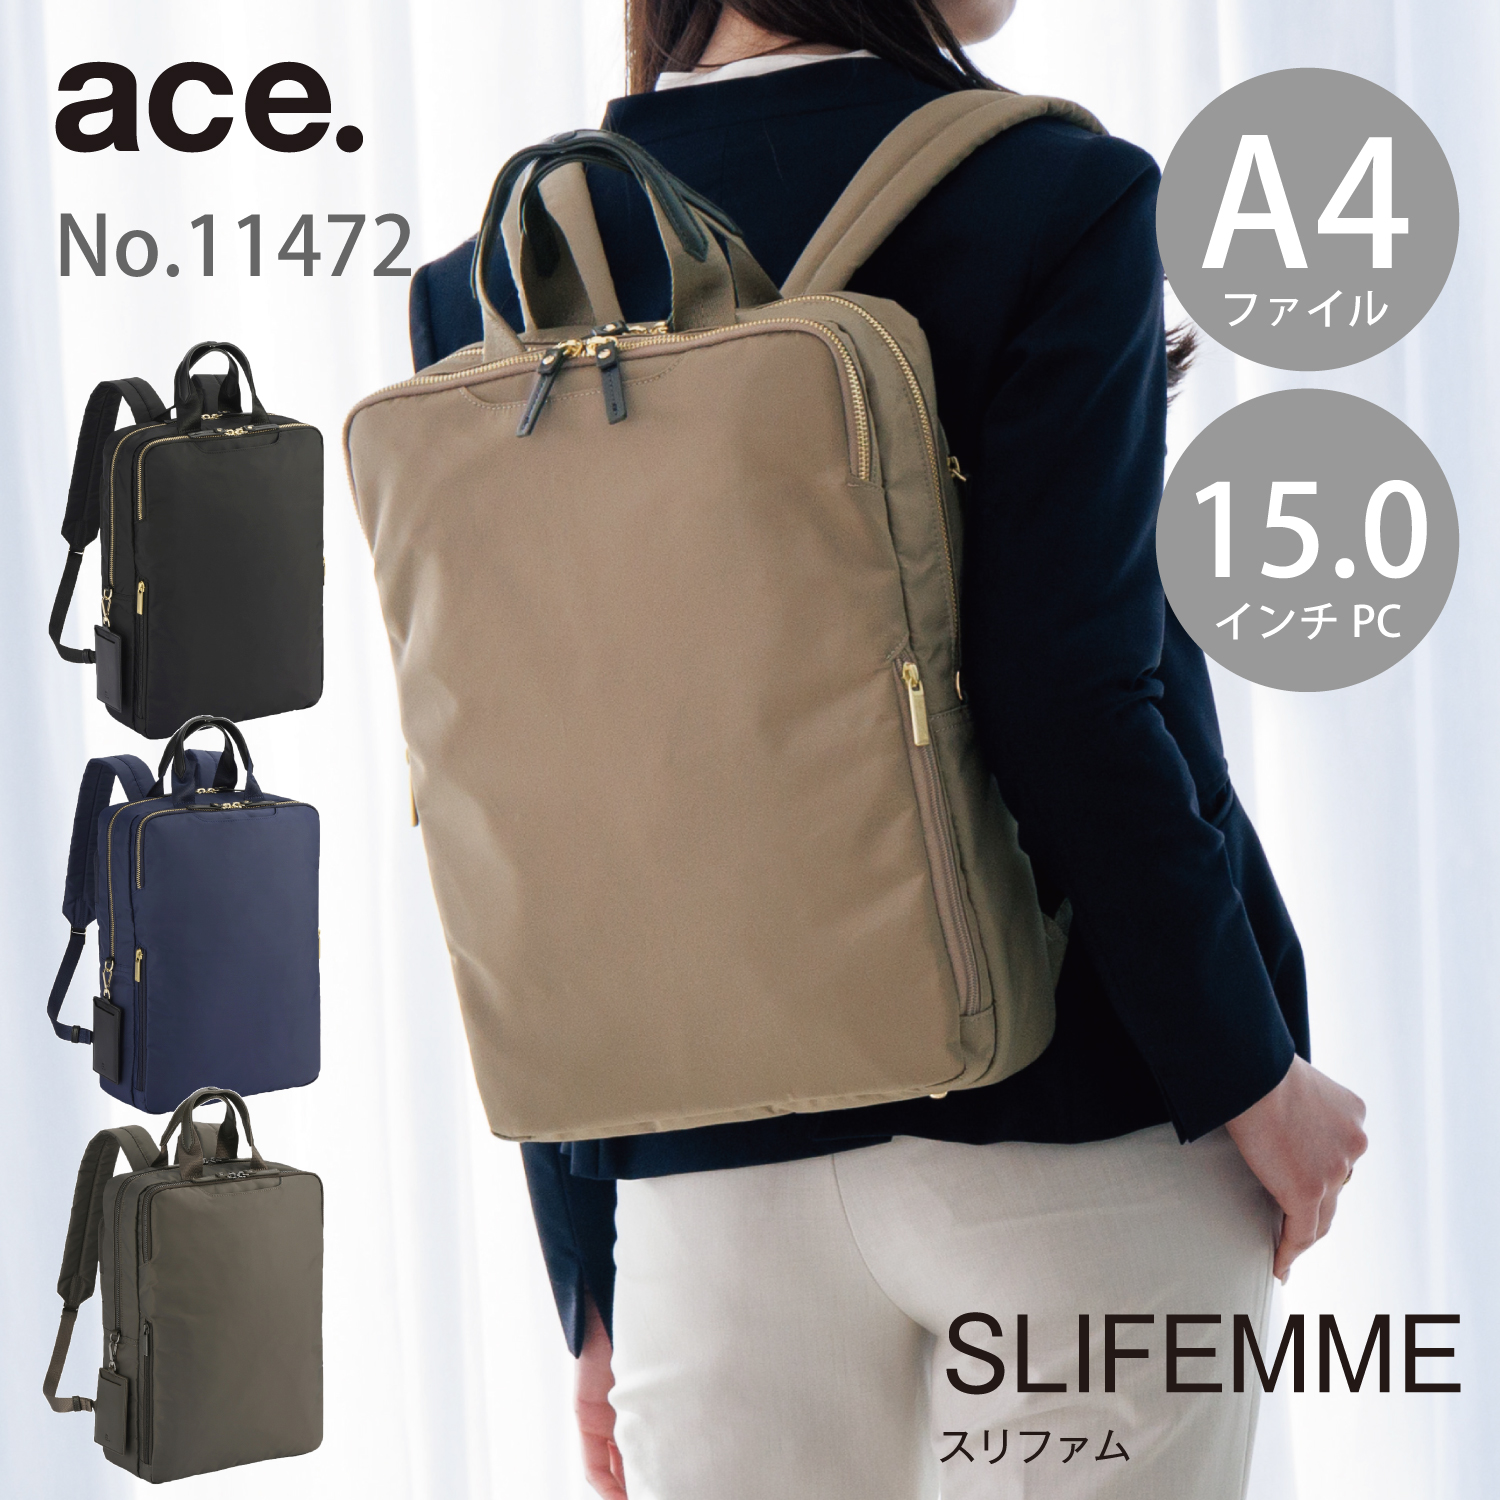 [ Ace официальный ] передний держать портфель женский рюкзак деловой рюкзак женский Ace легкий a4 ace. потертость famPC место хранения 11472